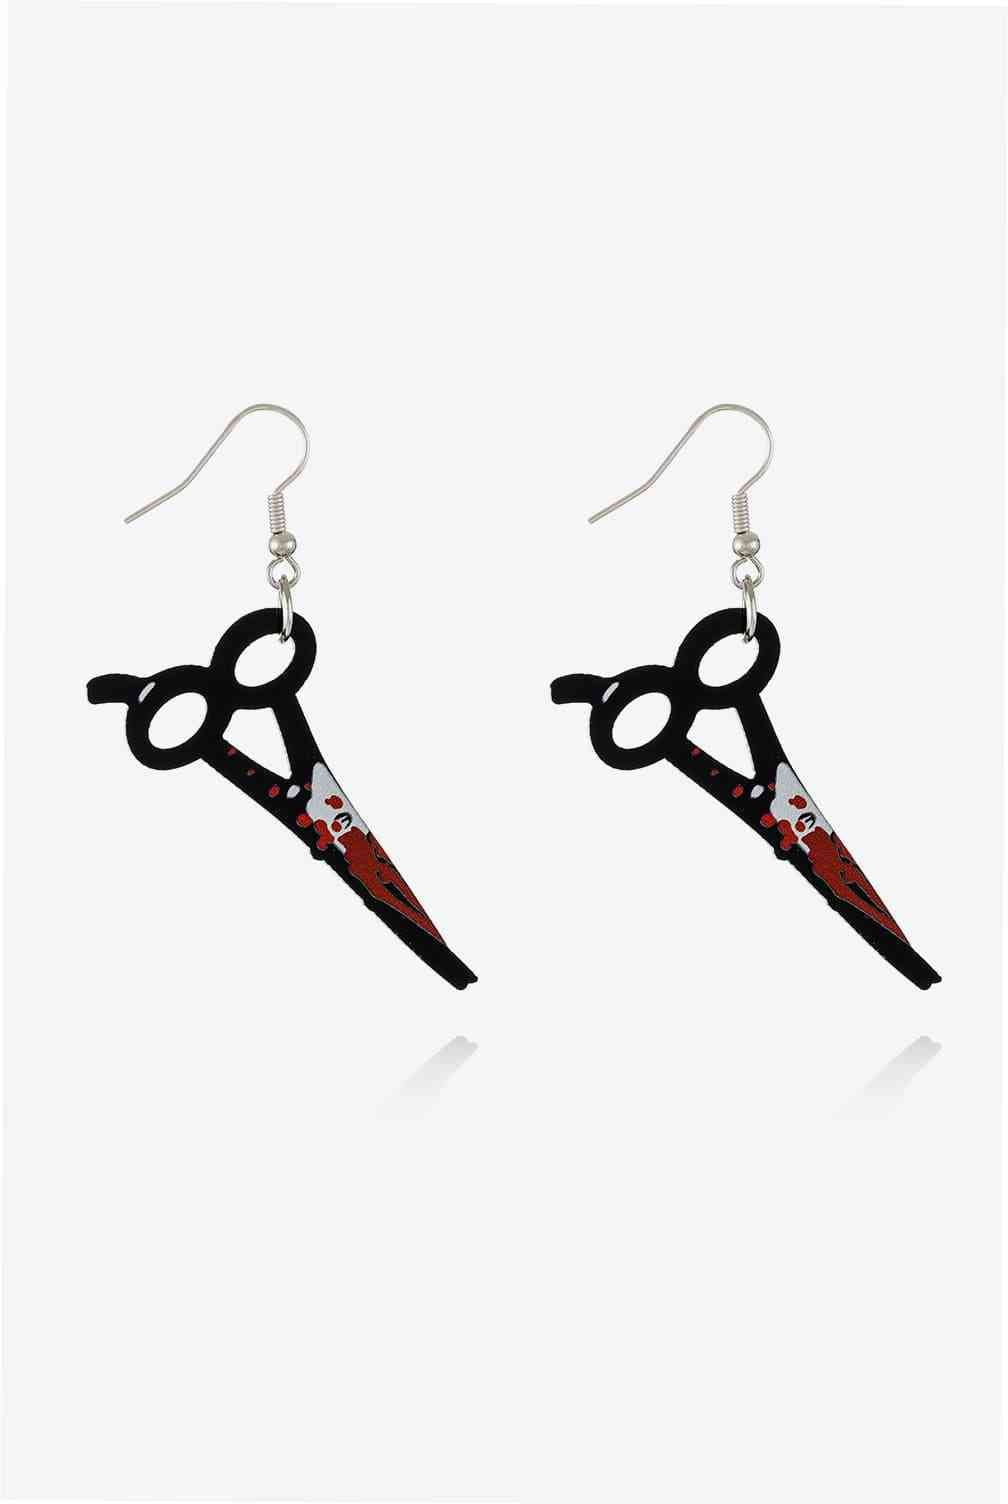 Bloody Horror Drop Earrings - GemThreads Boutique Bloody Horror Drop Earrings